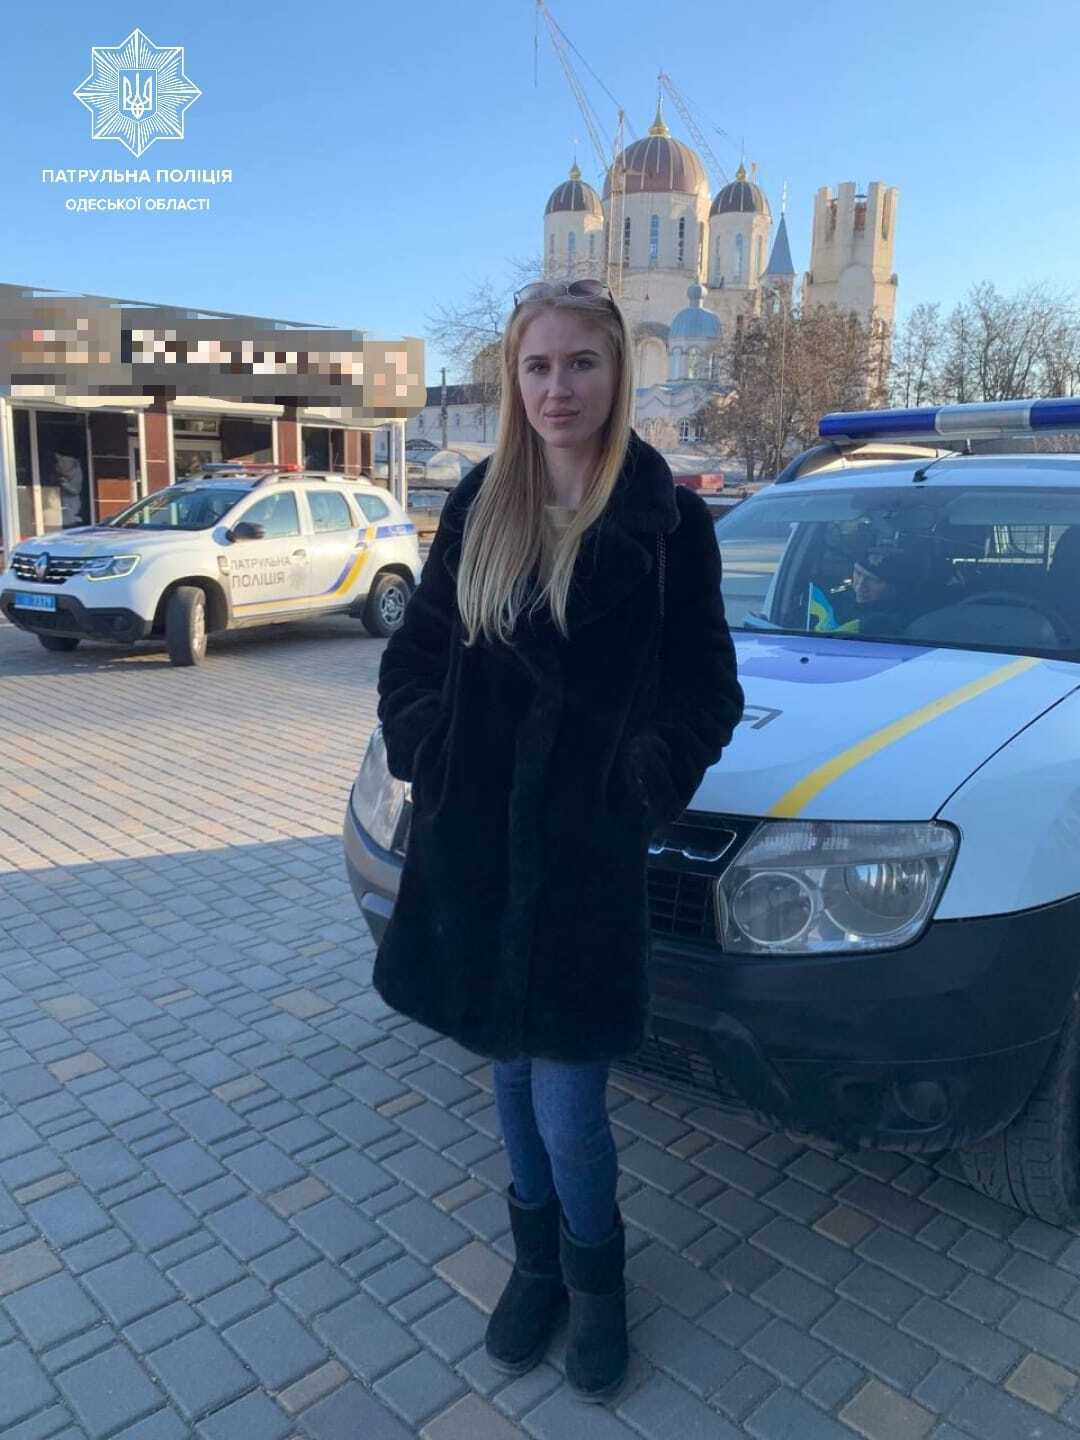 В Одессе девушка сама задержала вора, отобравшего телефон у пенсионера, и передала его полиции. Фото